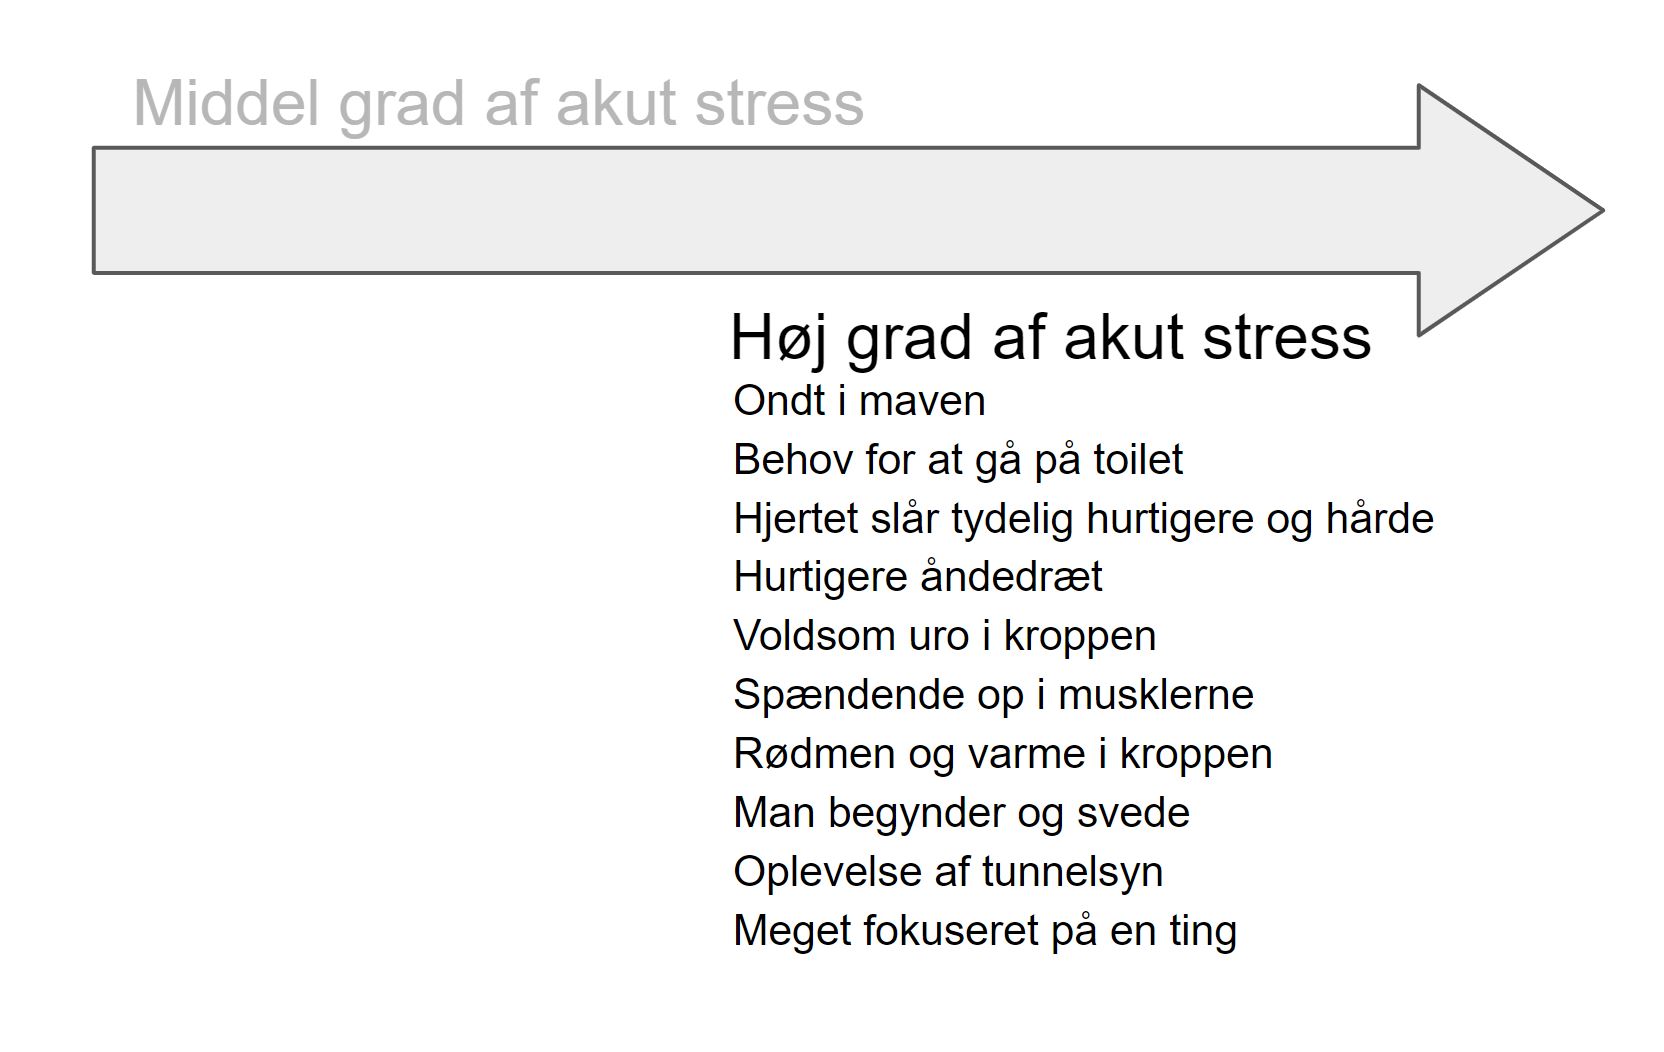 tegn på stress - akut stress intensite - tegn på høj grad af akut stress